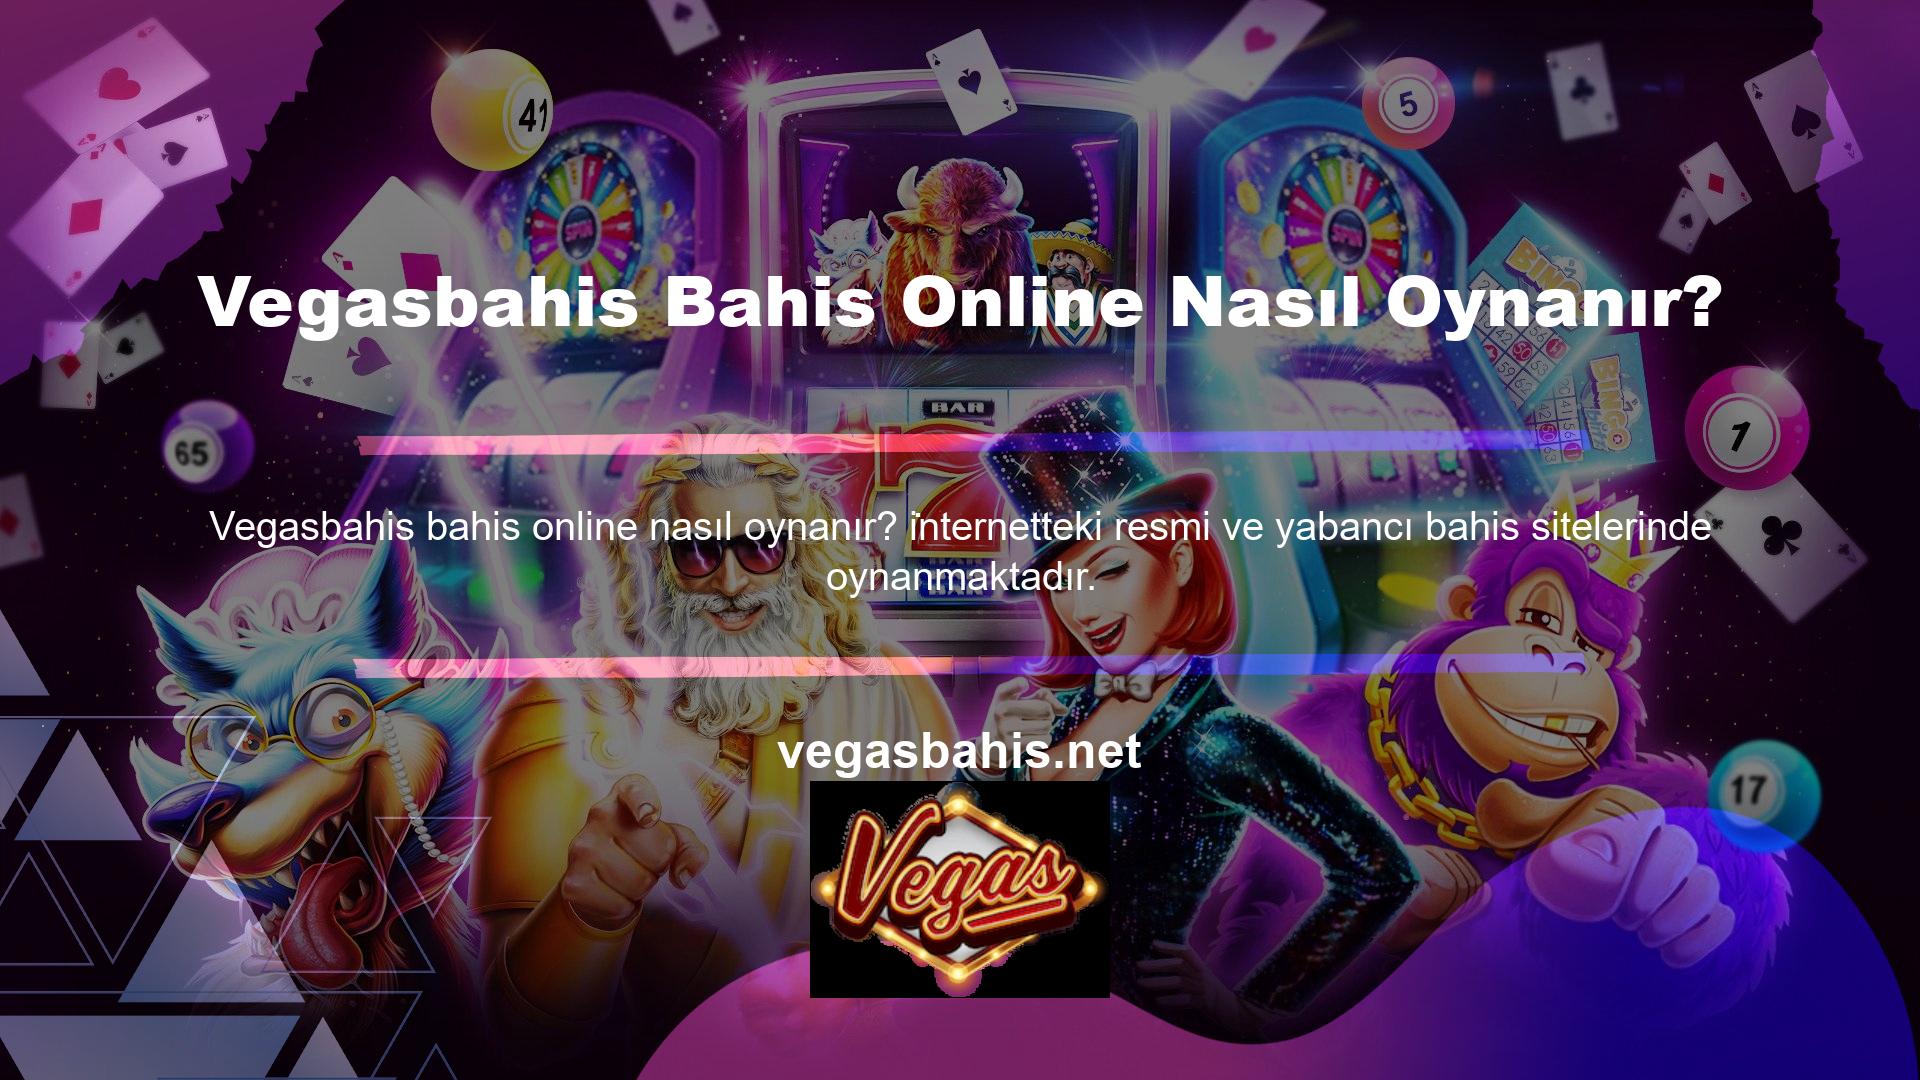 Resmi casino siteleri, Türk casino düzenlemelerine göre faaliyet göstermektedir